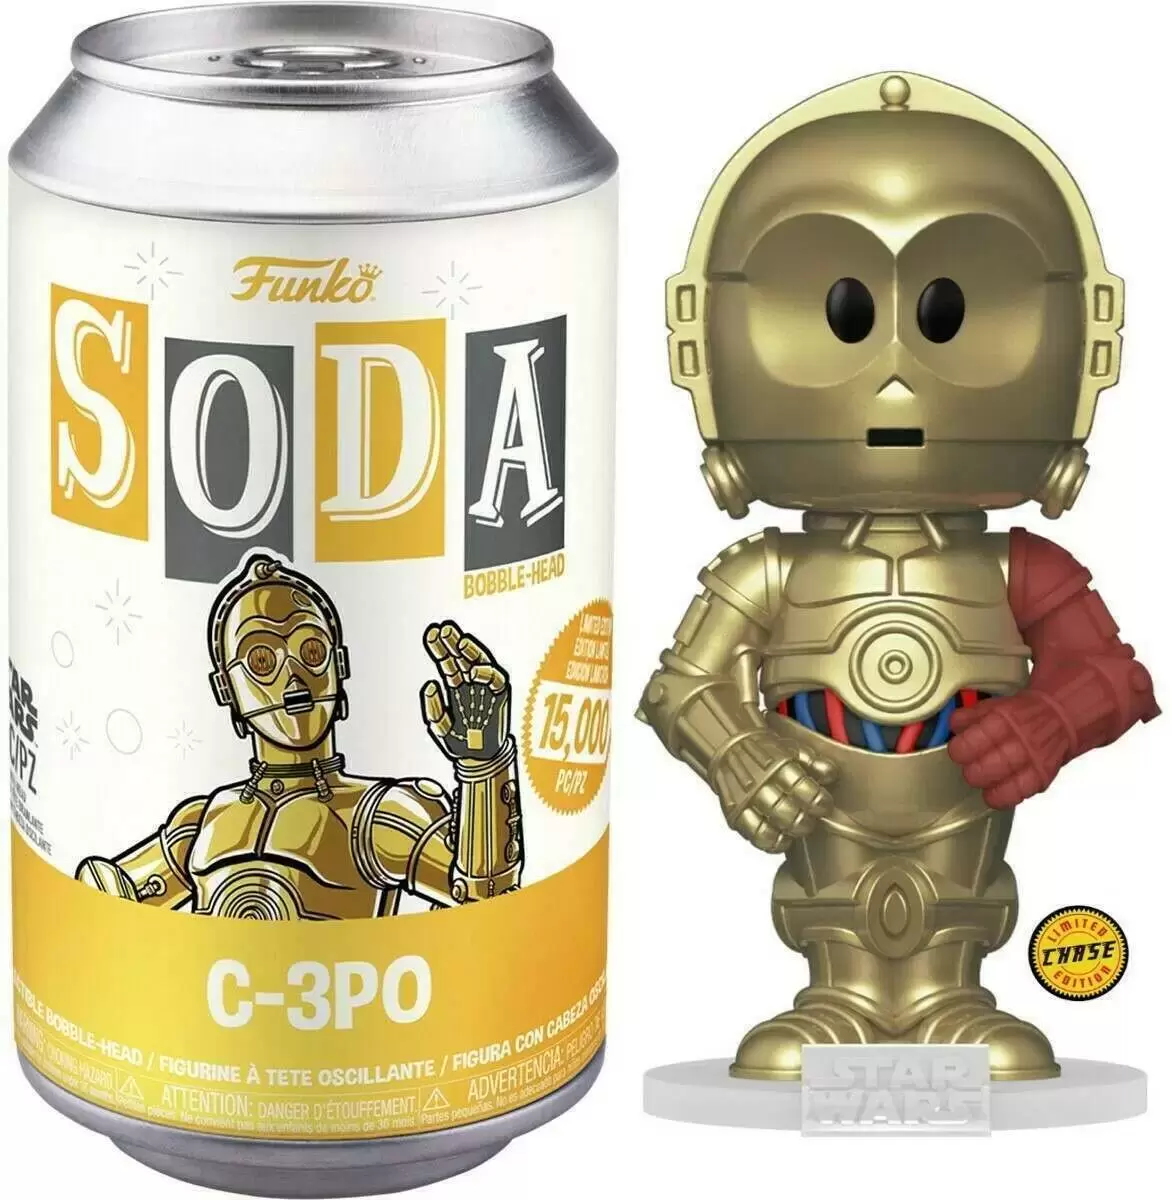 Vinyl Soda! - Star Wars - C-3PO Chase